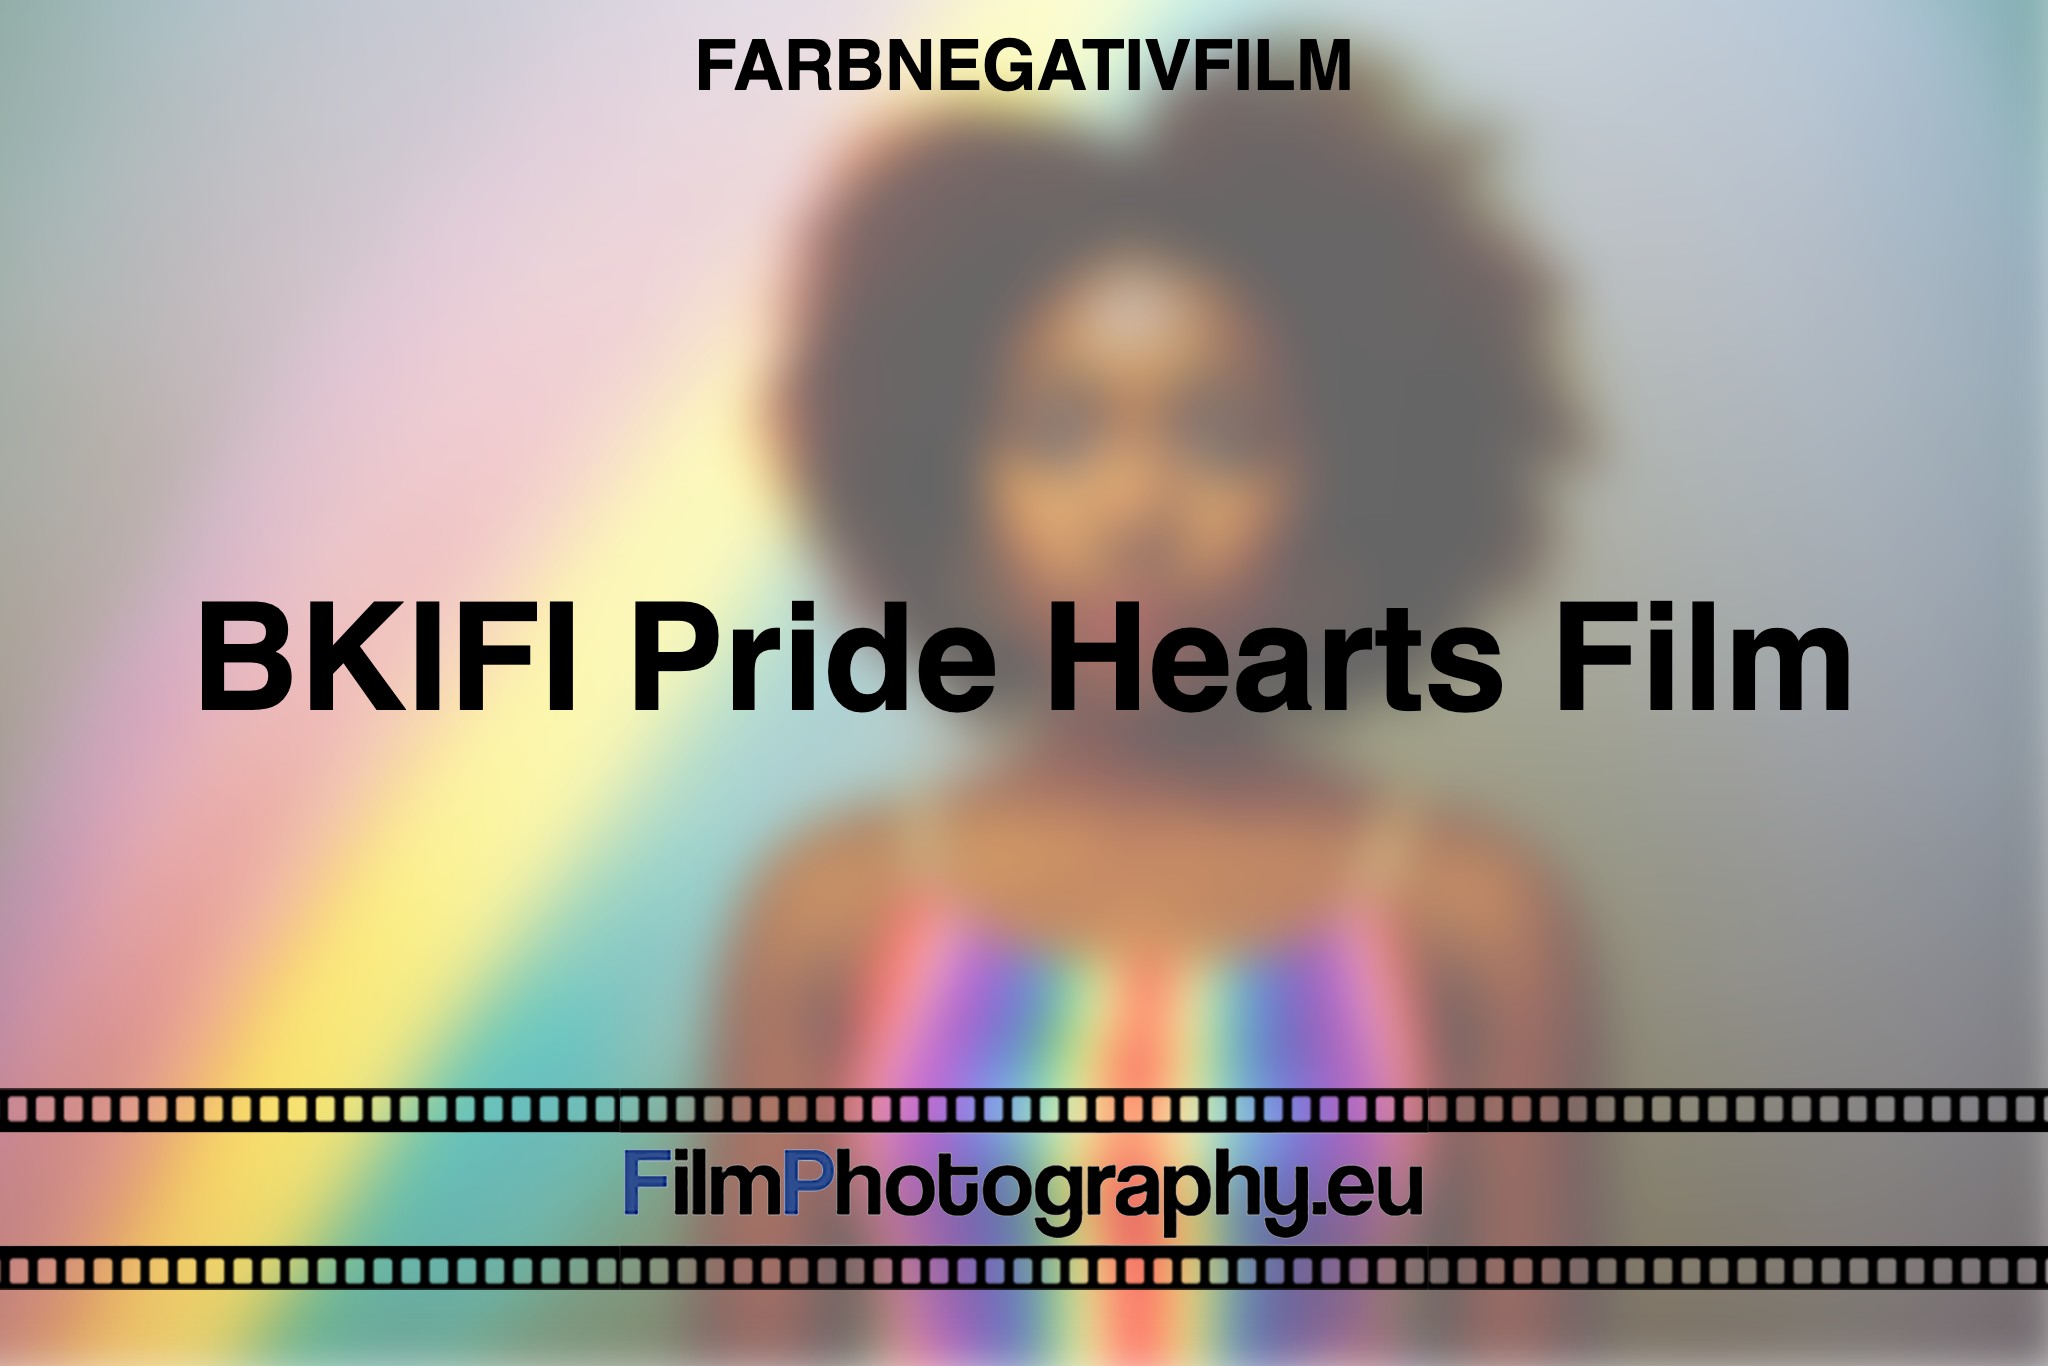 BKIFI-Pride-Hearts-Film-Farbnegativfilm-bnv